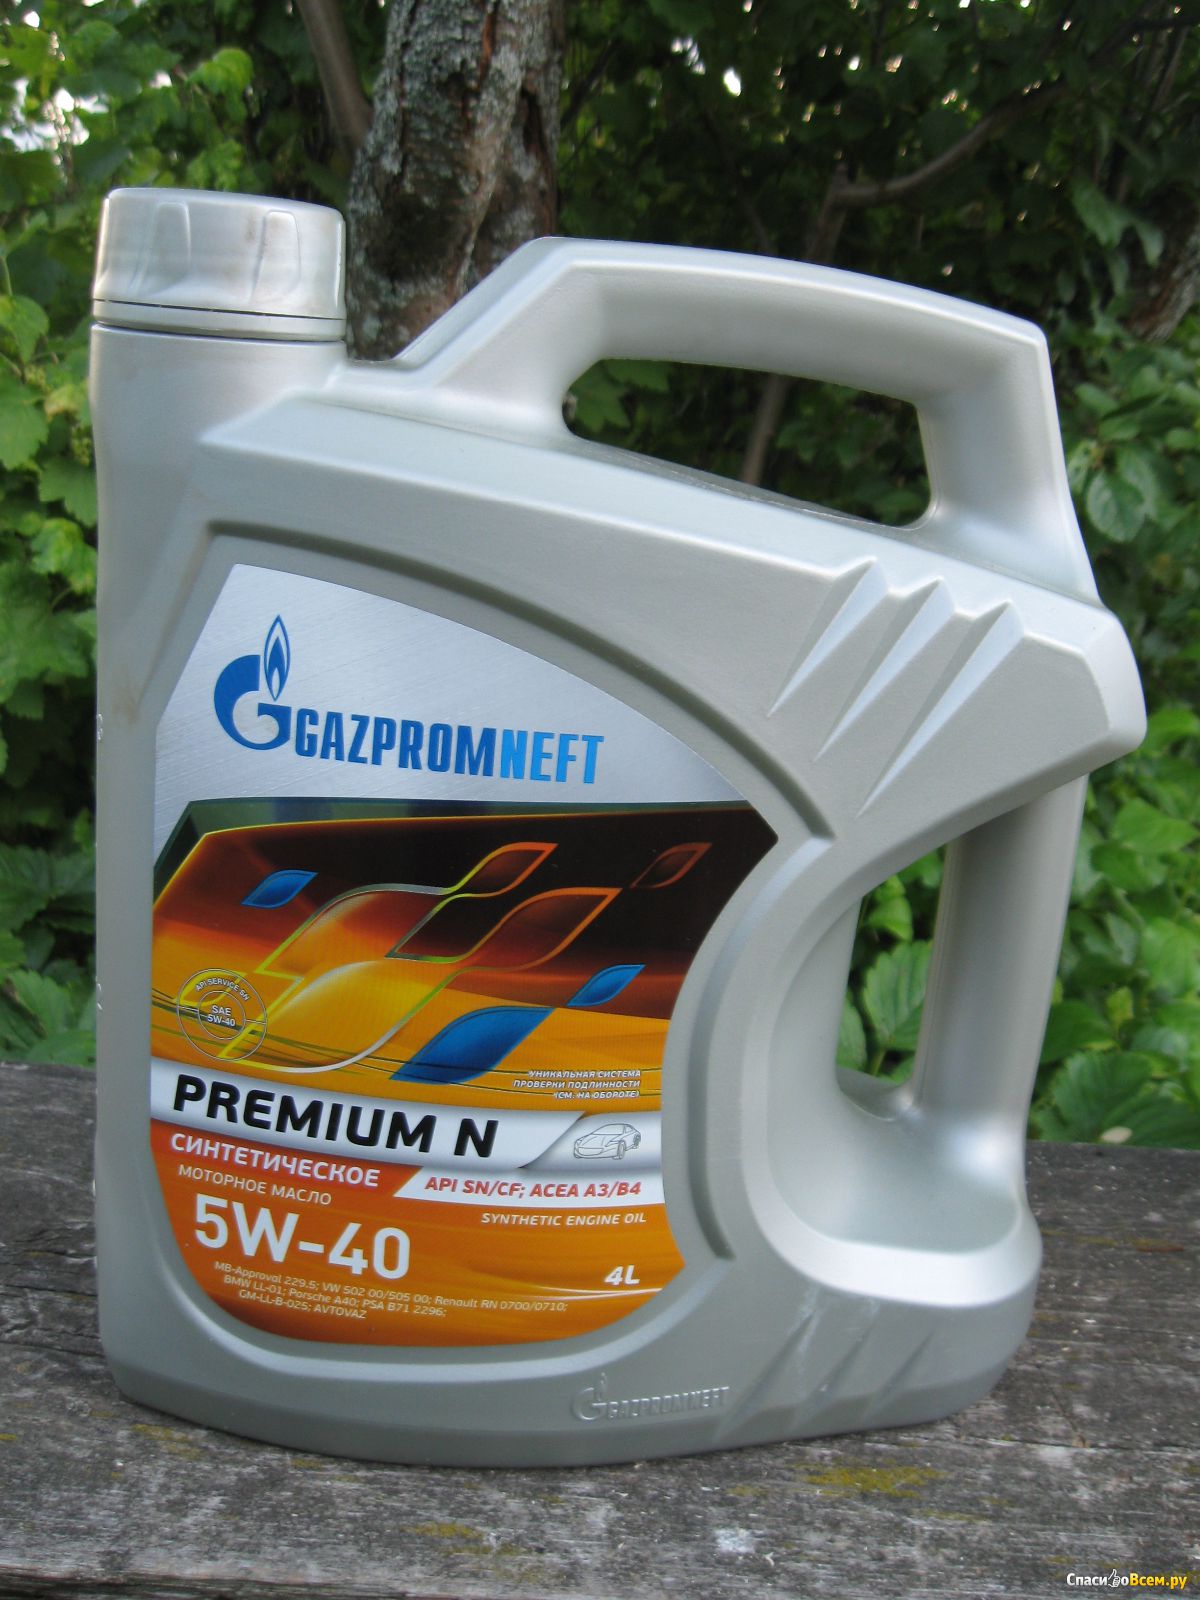 Моторное масло gazpromneft 5w 40. Масло Газпромнефть 5w40 Premium n. Gazpromneft Premium n 5w-40. Масло Газпромнефть 5w40 премиум.